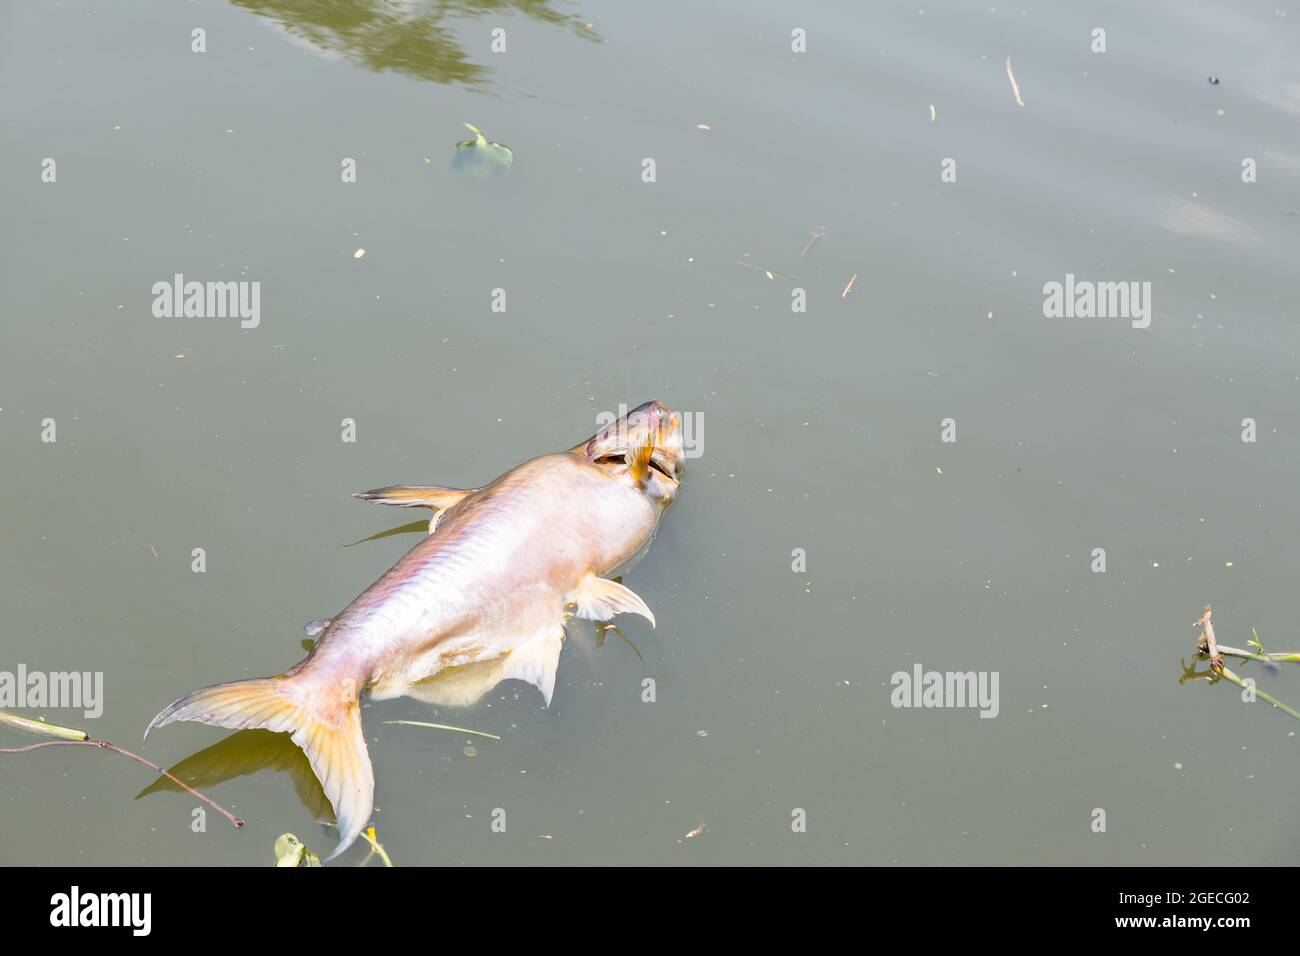 Tote Fische schwammen im dunklen Wasserfluss, Wasserverschmutzung Peoblem Stockfoto